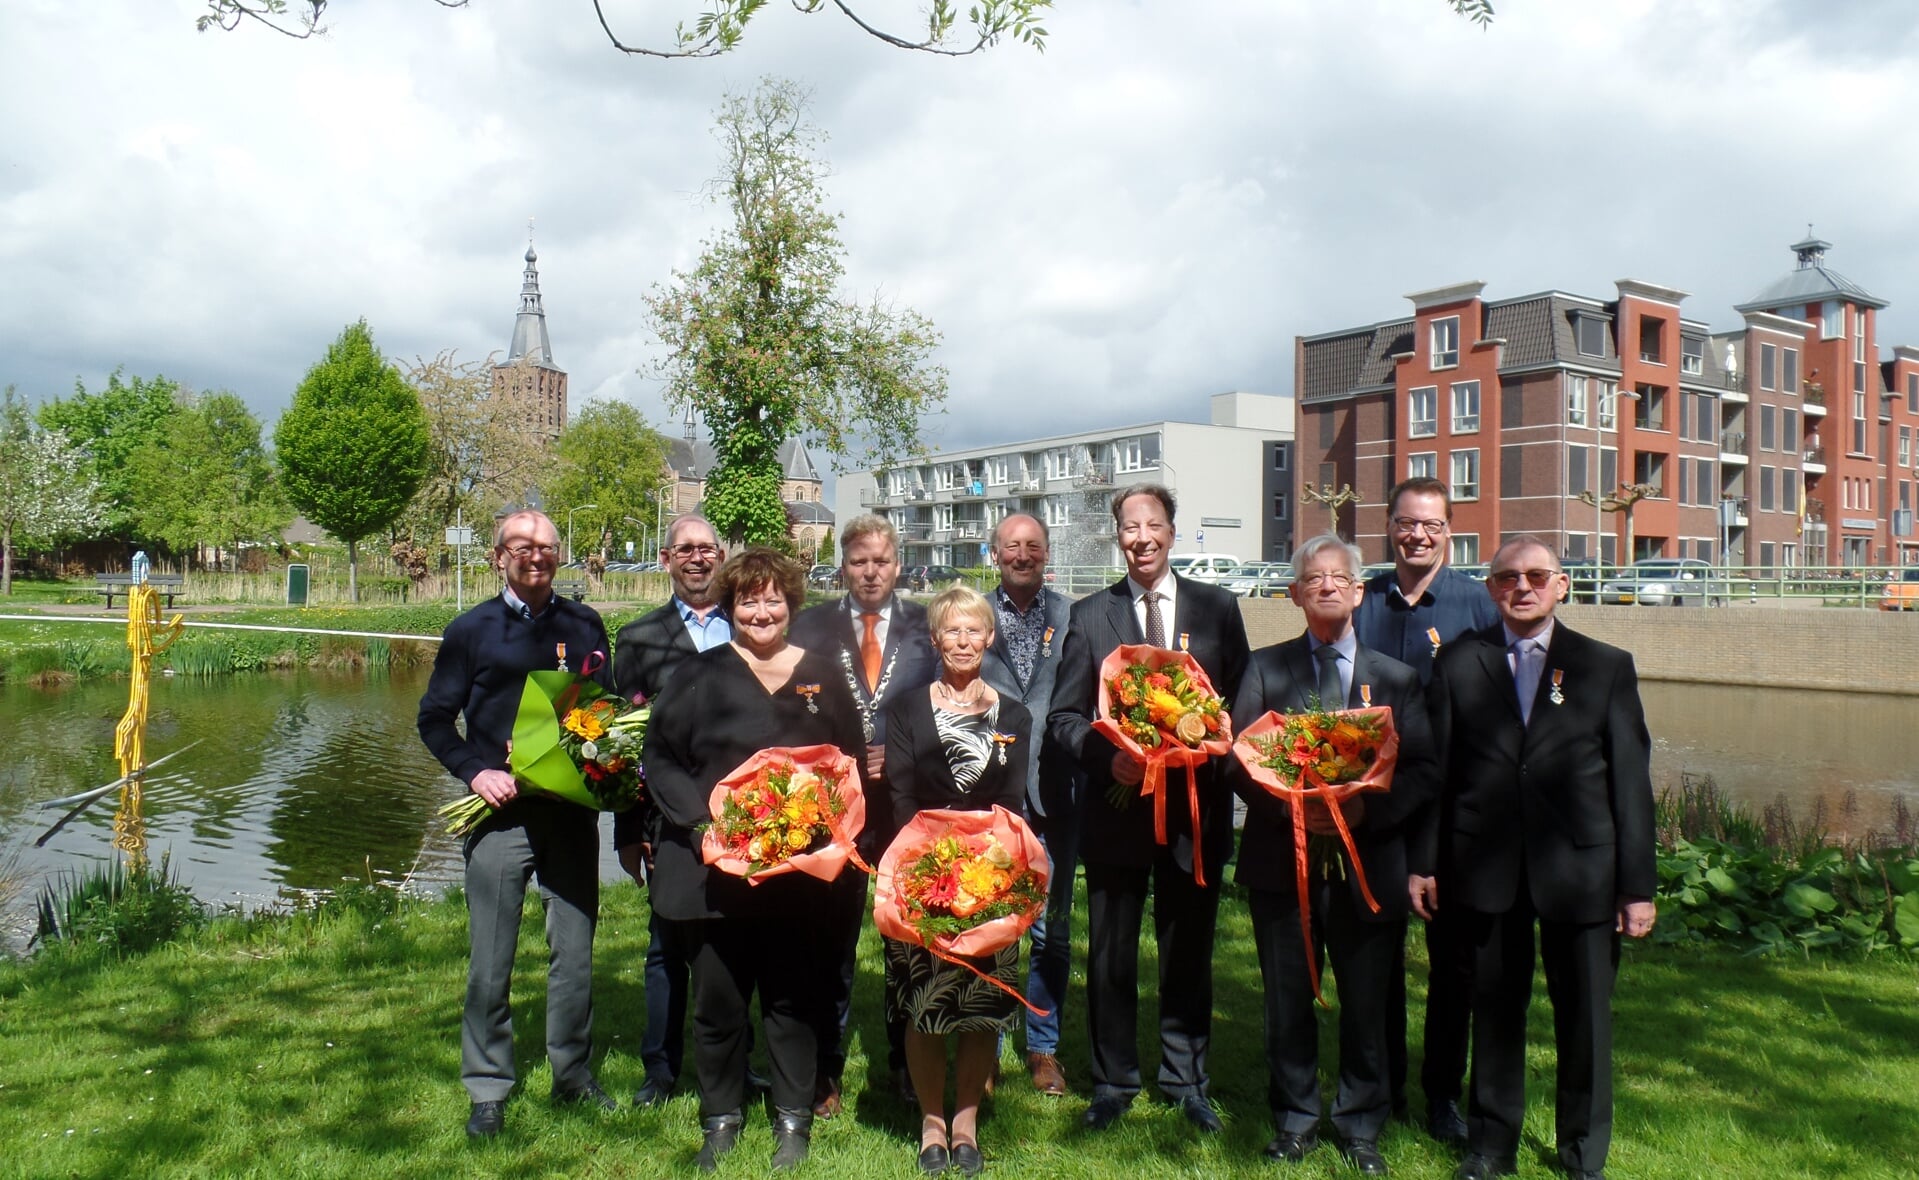 Burgemeester Mark Buijs poseert met de negen inwoners van Boxtel die werden benoemd tot lid in de Orde van Oranje-Nassau. (Foto: Pol Jansen). 